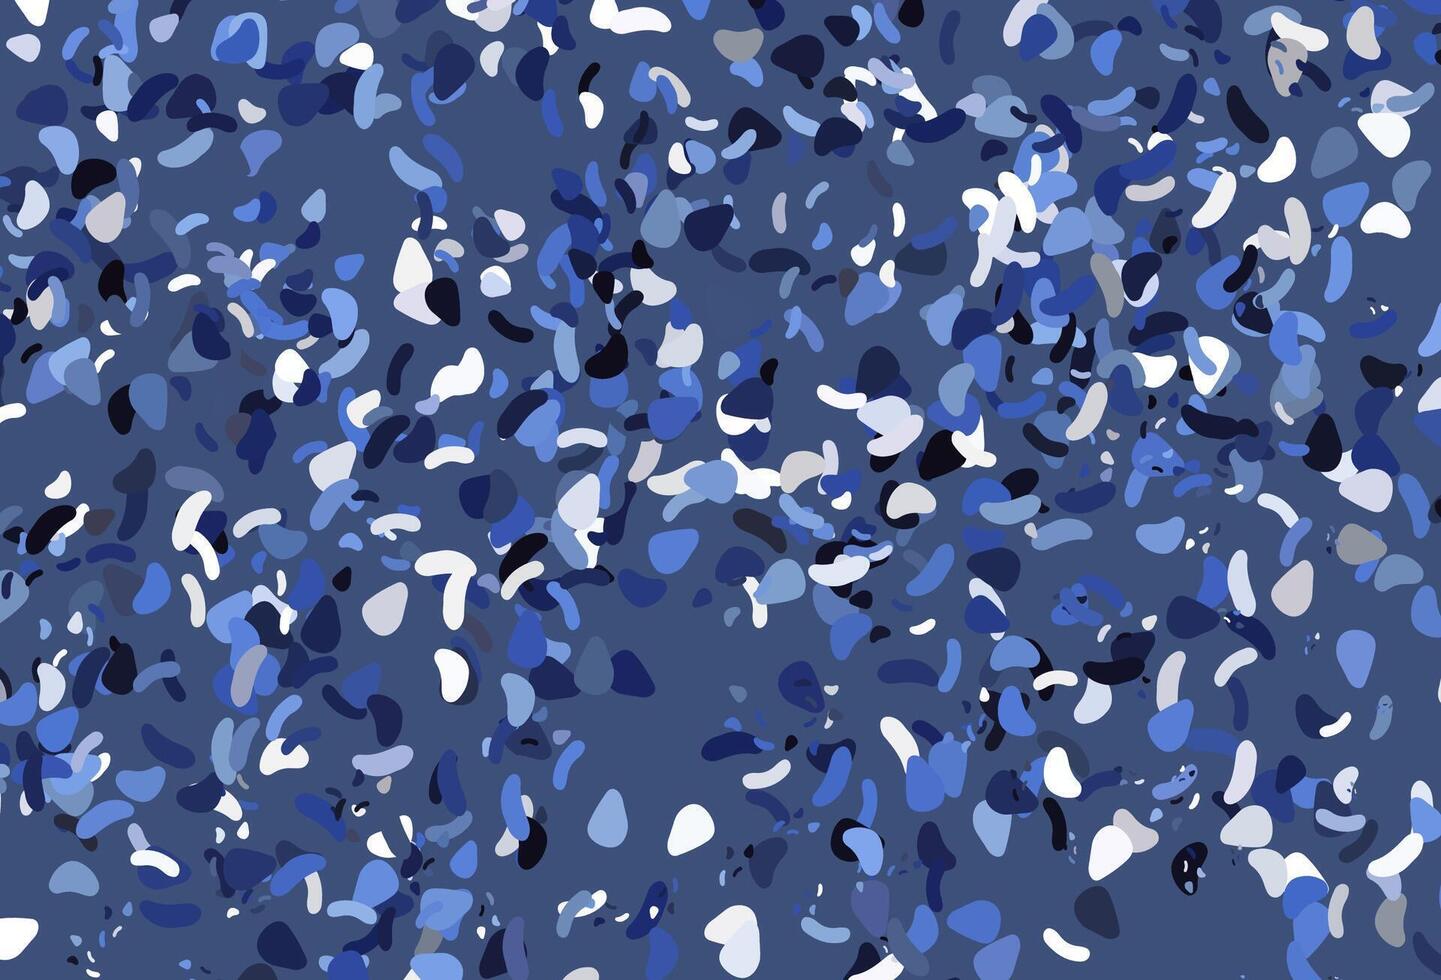 pano de fundo azul claro do vetor com formas abstratas.